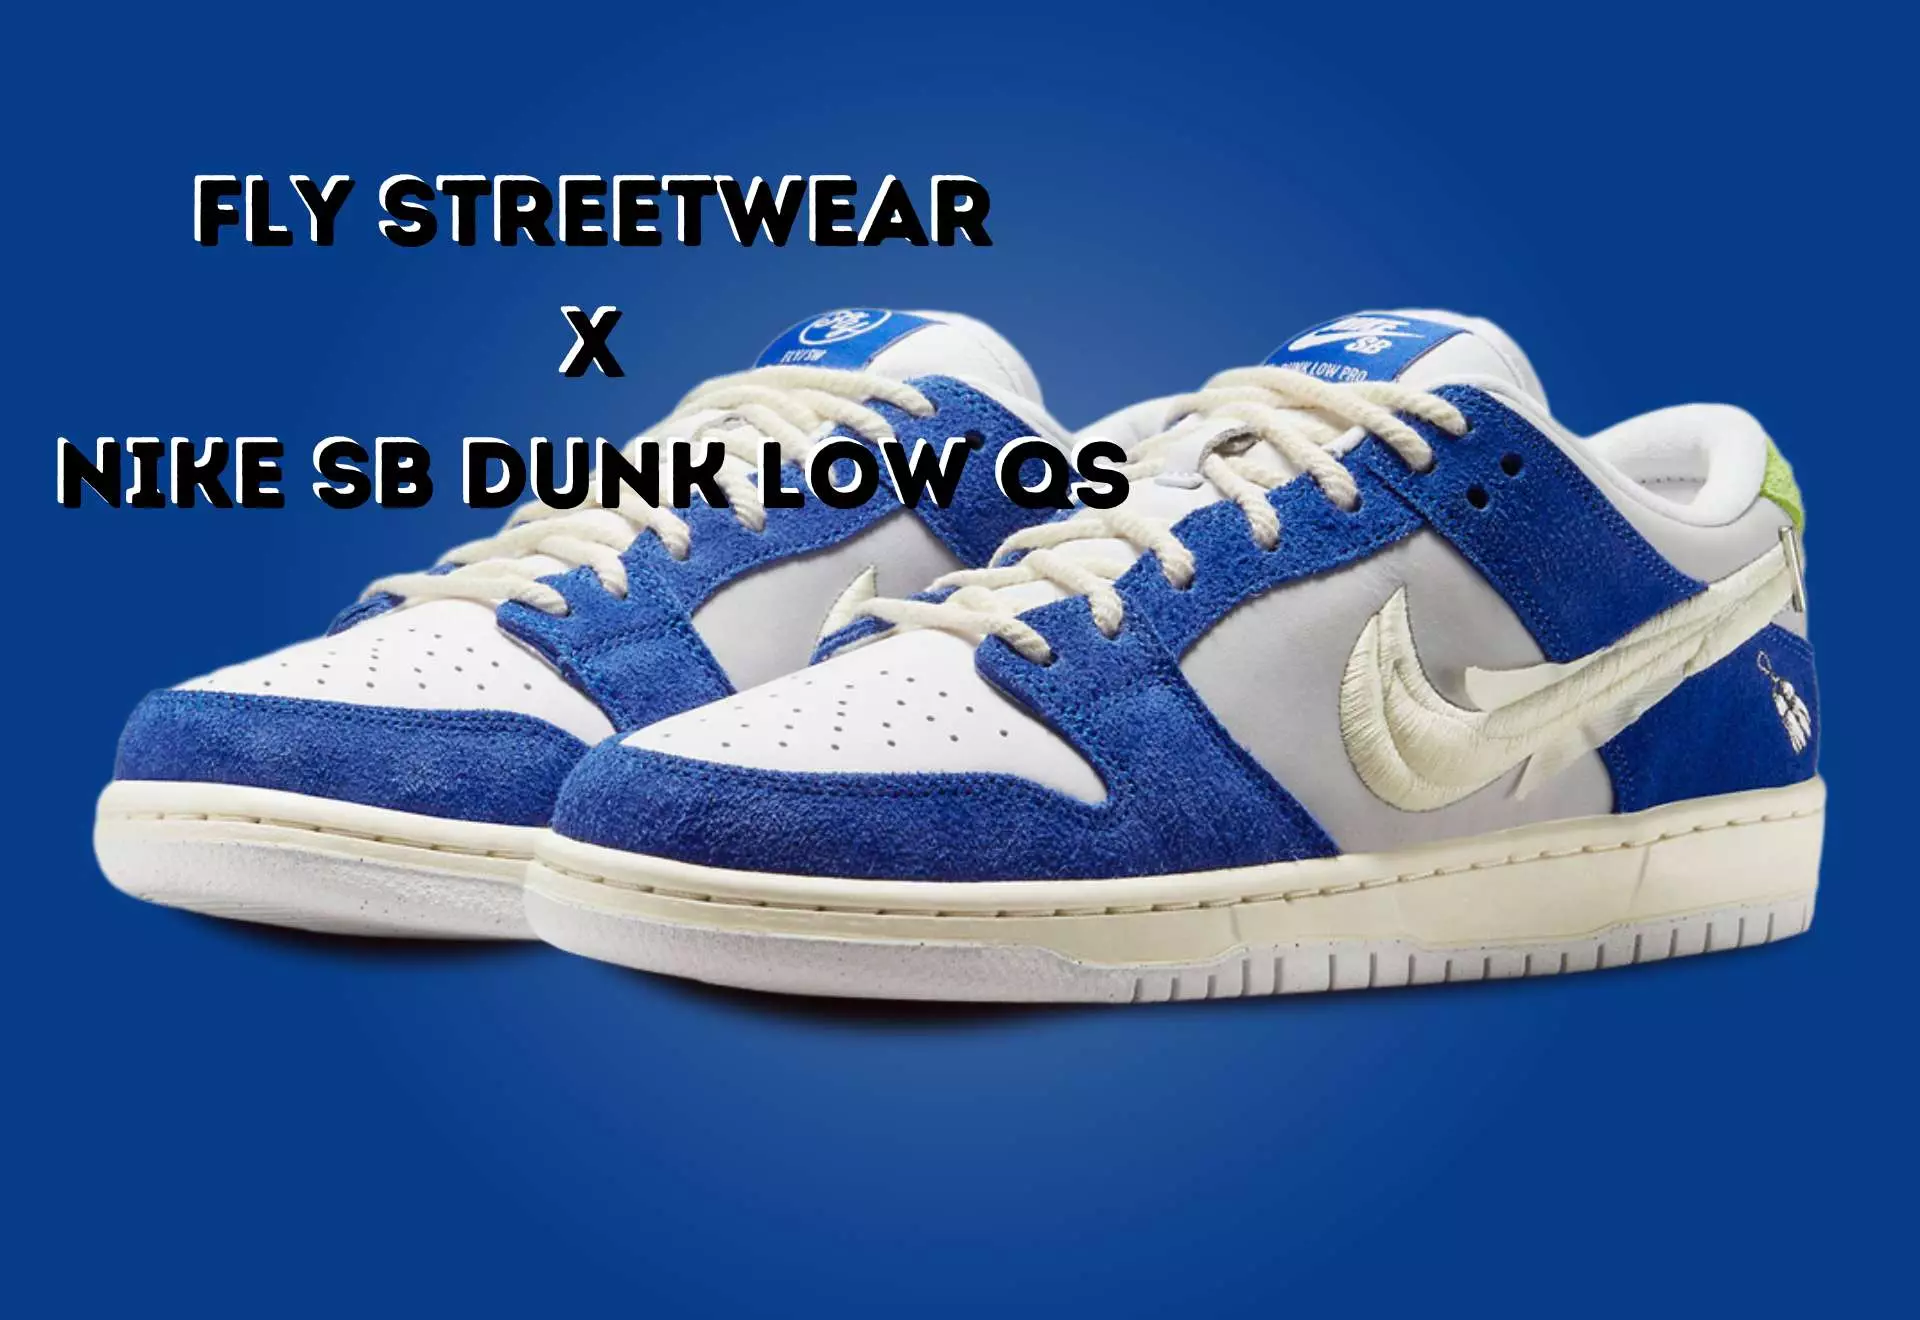 NIKE SB DUNK LOW PRO QS “Fly Streetwear”